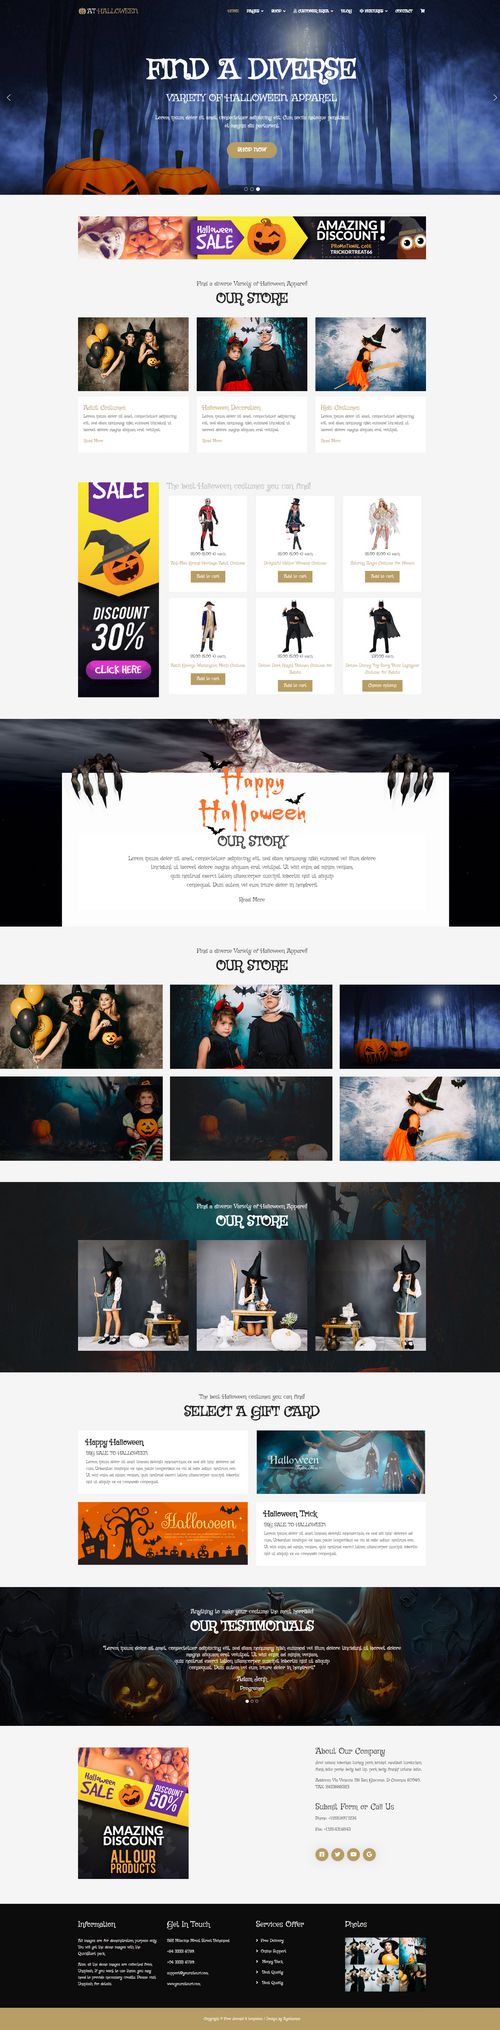 Halloween - Professional Responsive Halloween website template